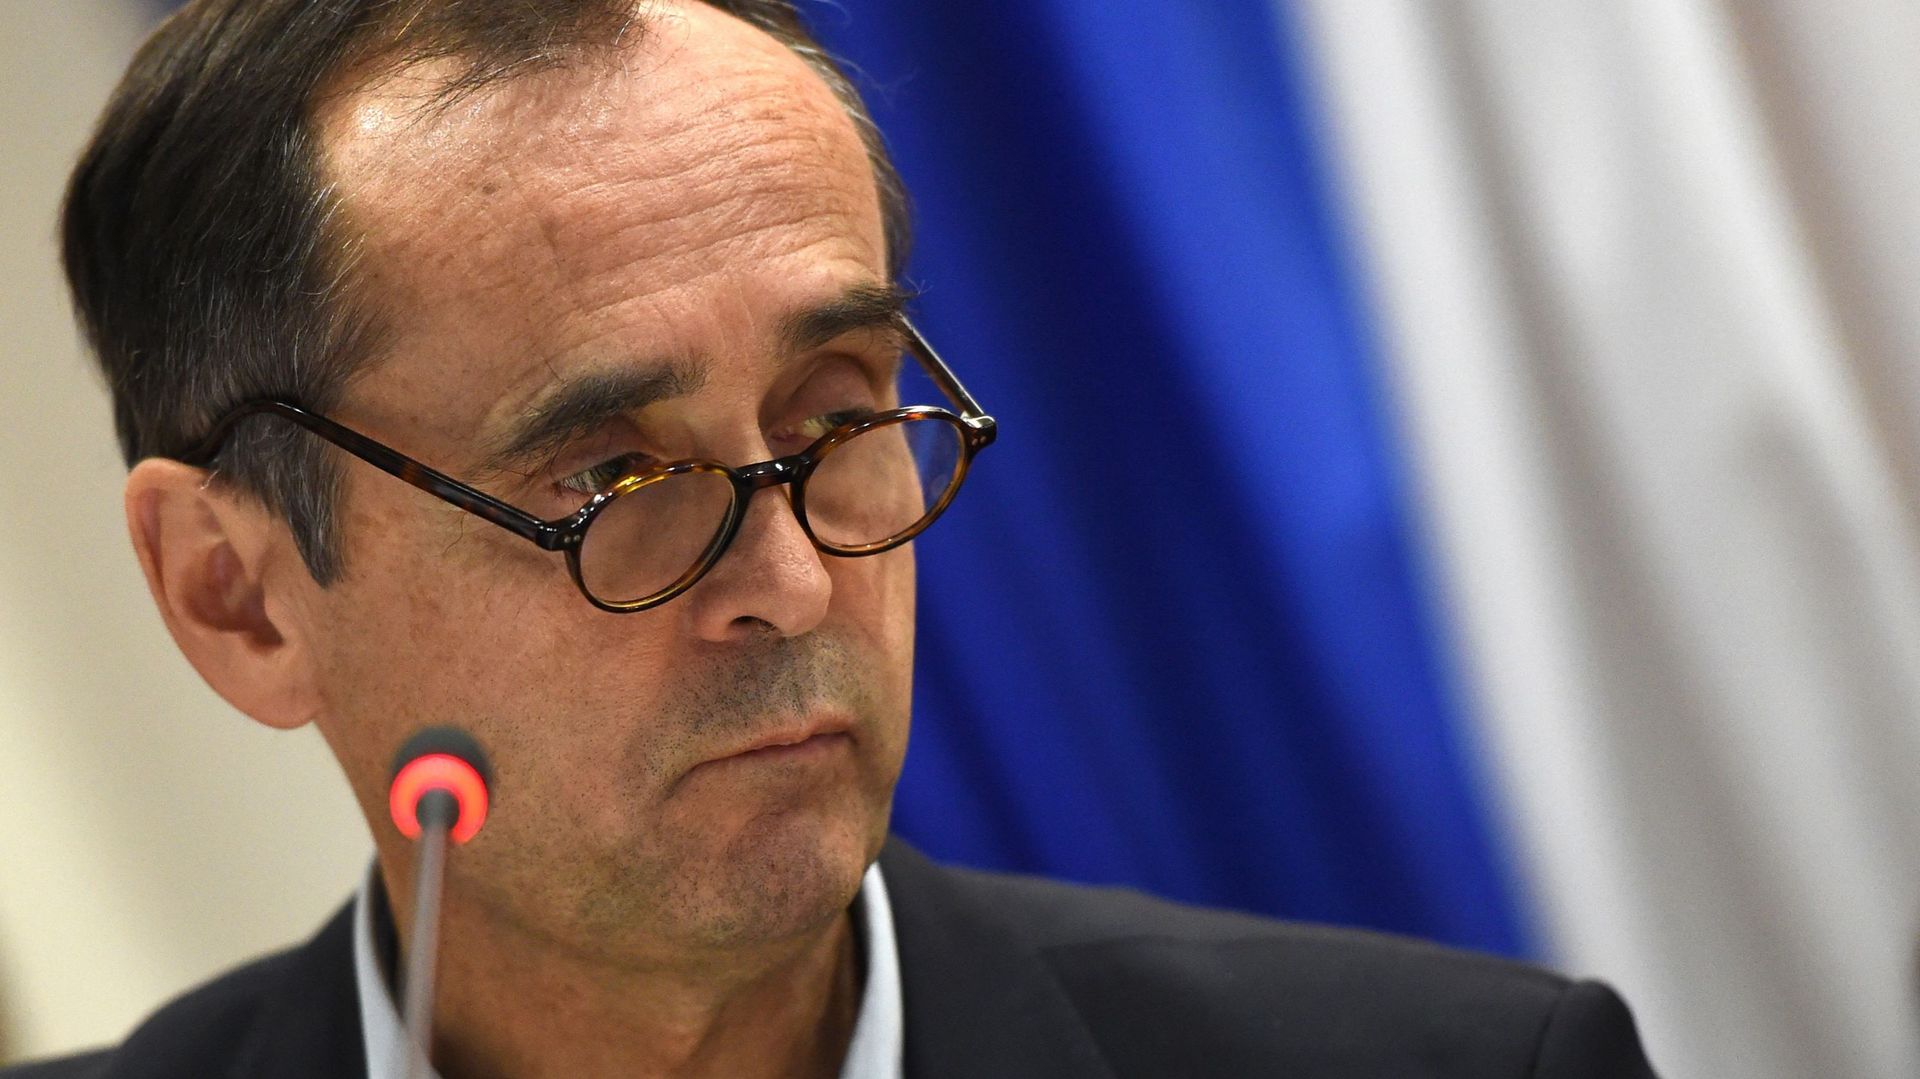 Le maire de Béziers, proche de l'extrême droite, sera jugé pour provocation à la haine